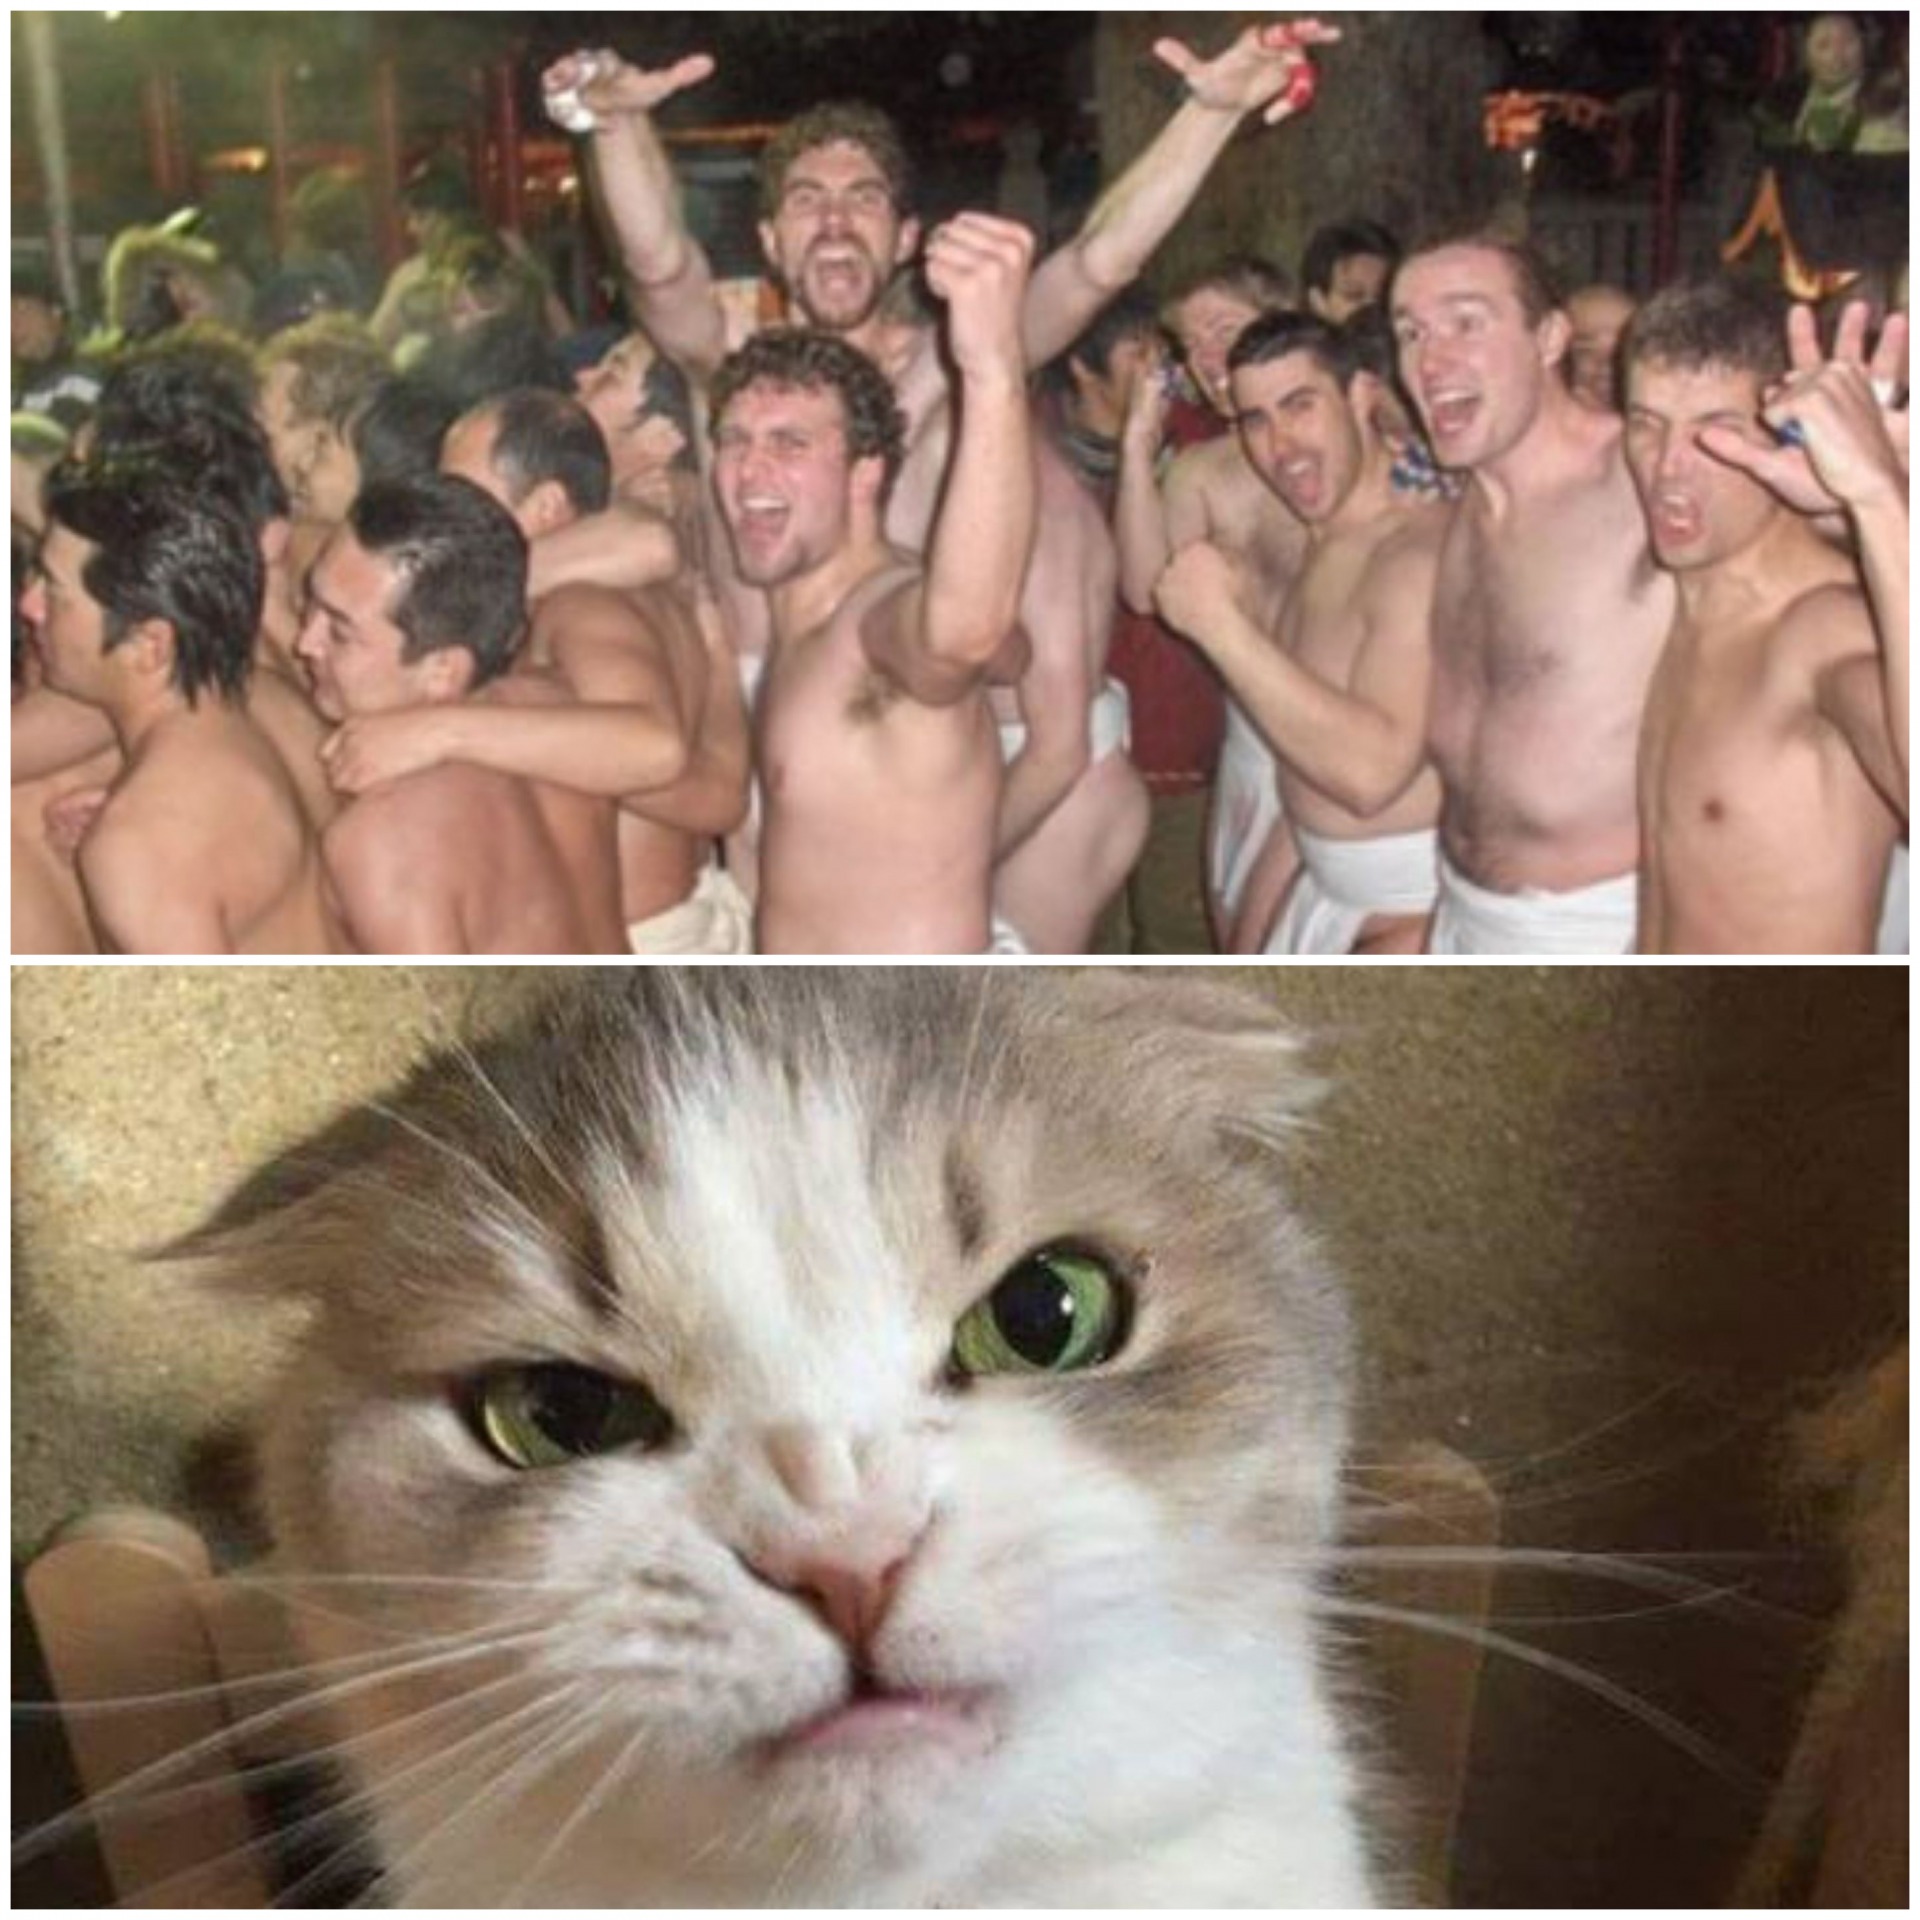 Naked men vs Cat Blank Meme Template